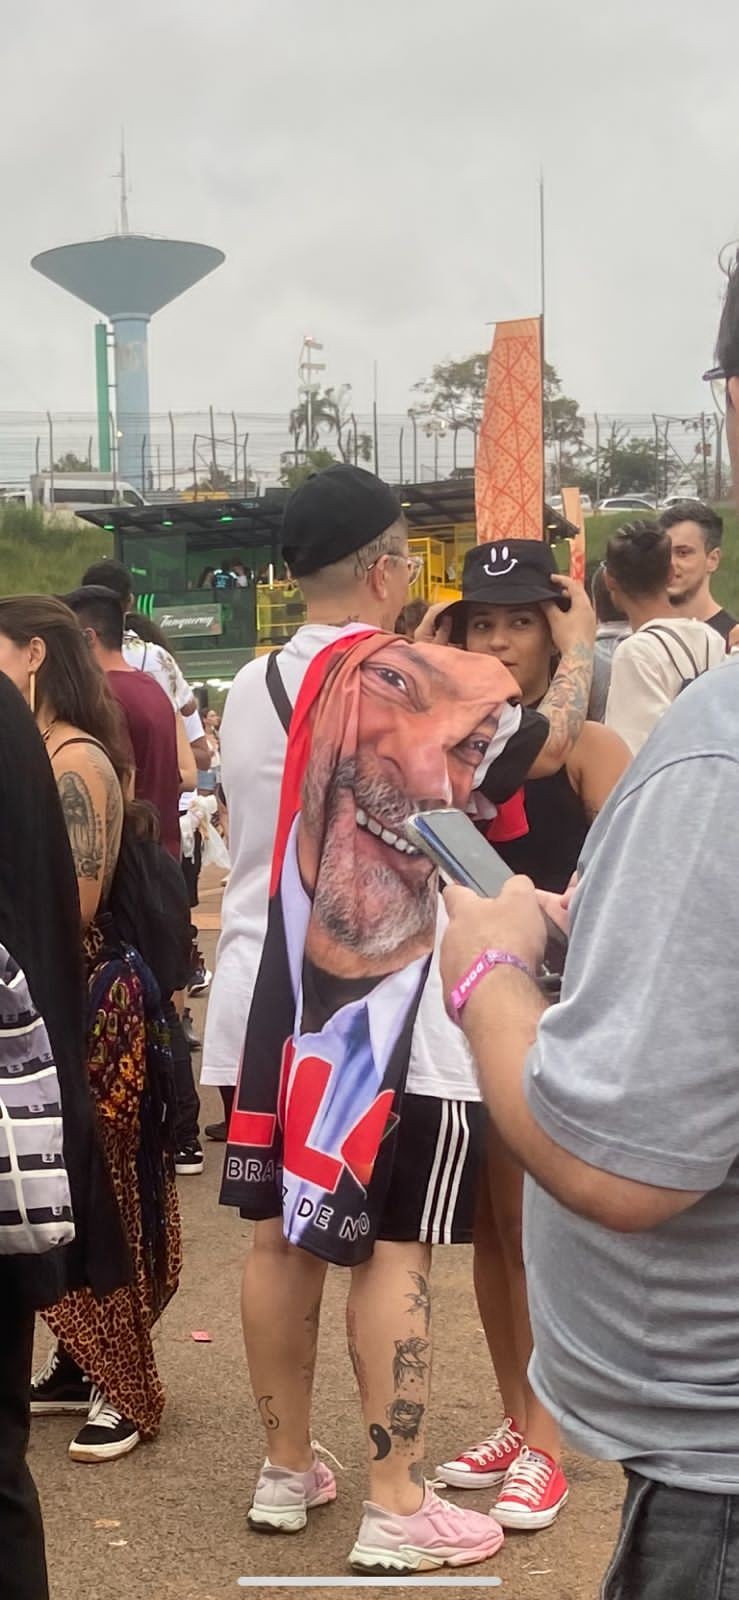 Enquanto espera o próximo show, fã posa com bandeira do ex-presidente Lula no festival (Foto: Ana Gonçalves / GQ Brasil)